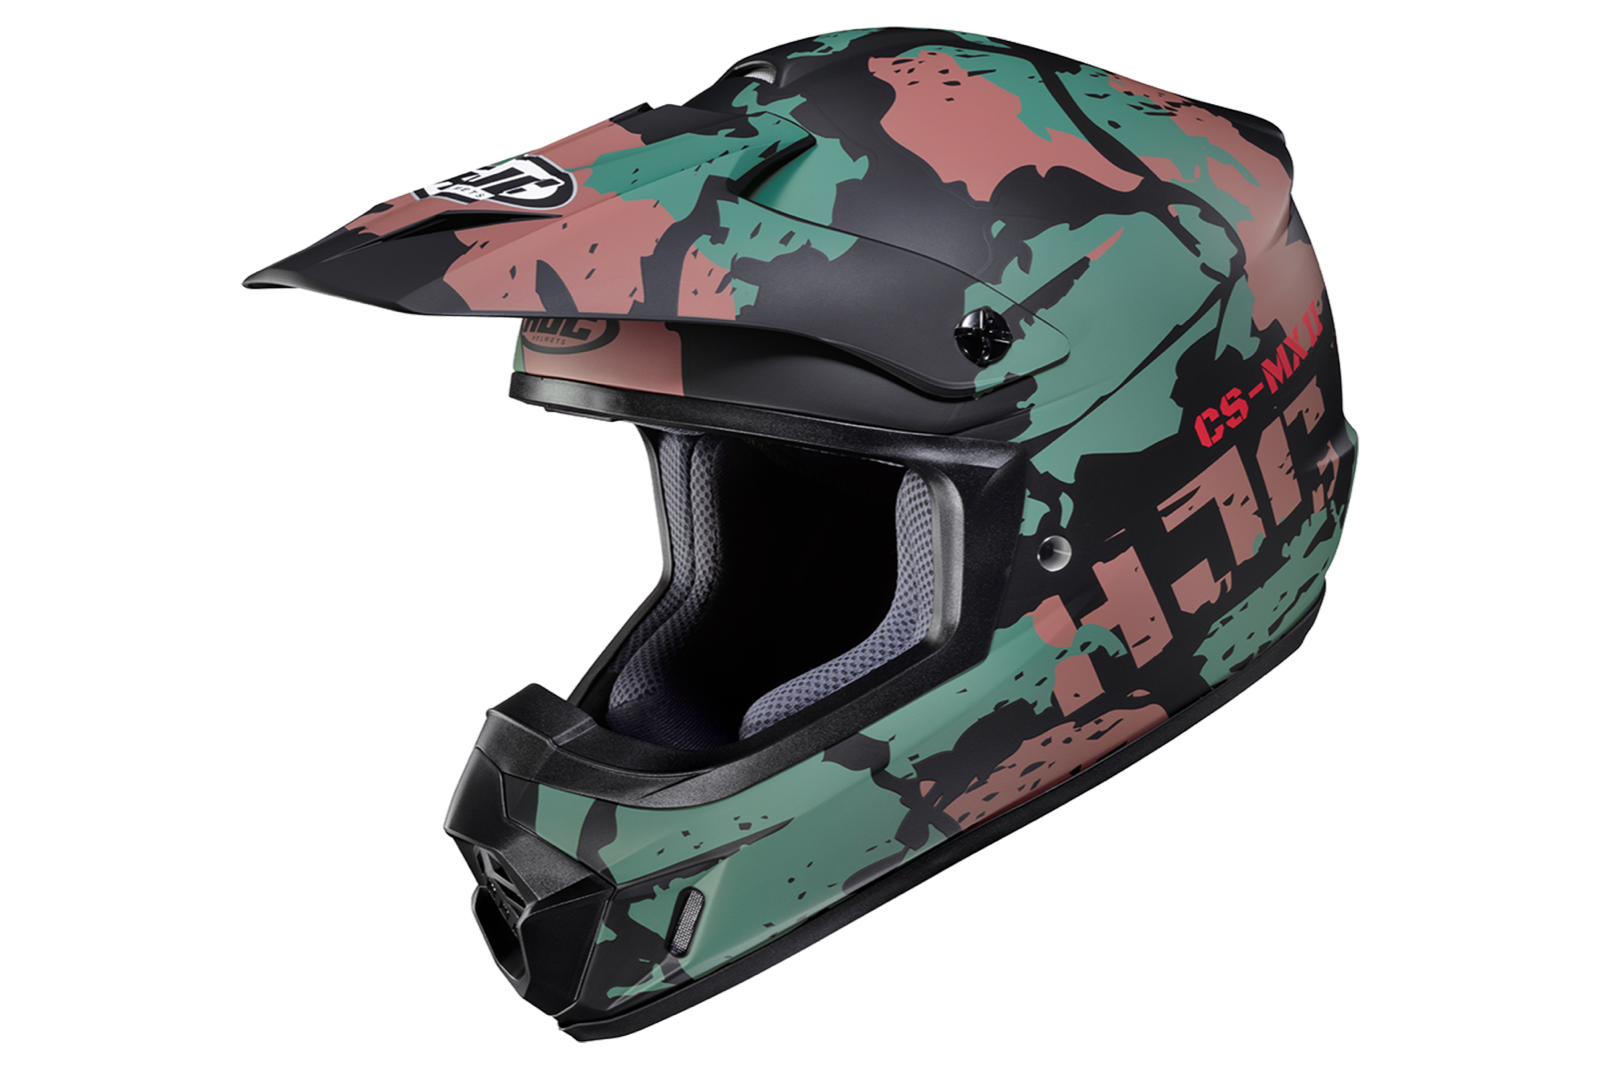 HJC CS-MX 2 Motocross-Helm 129,90€